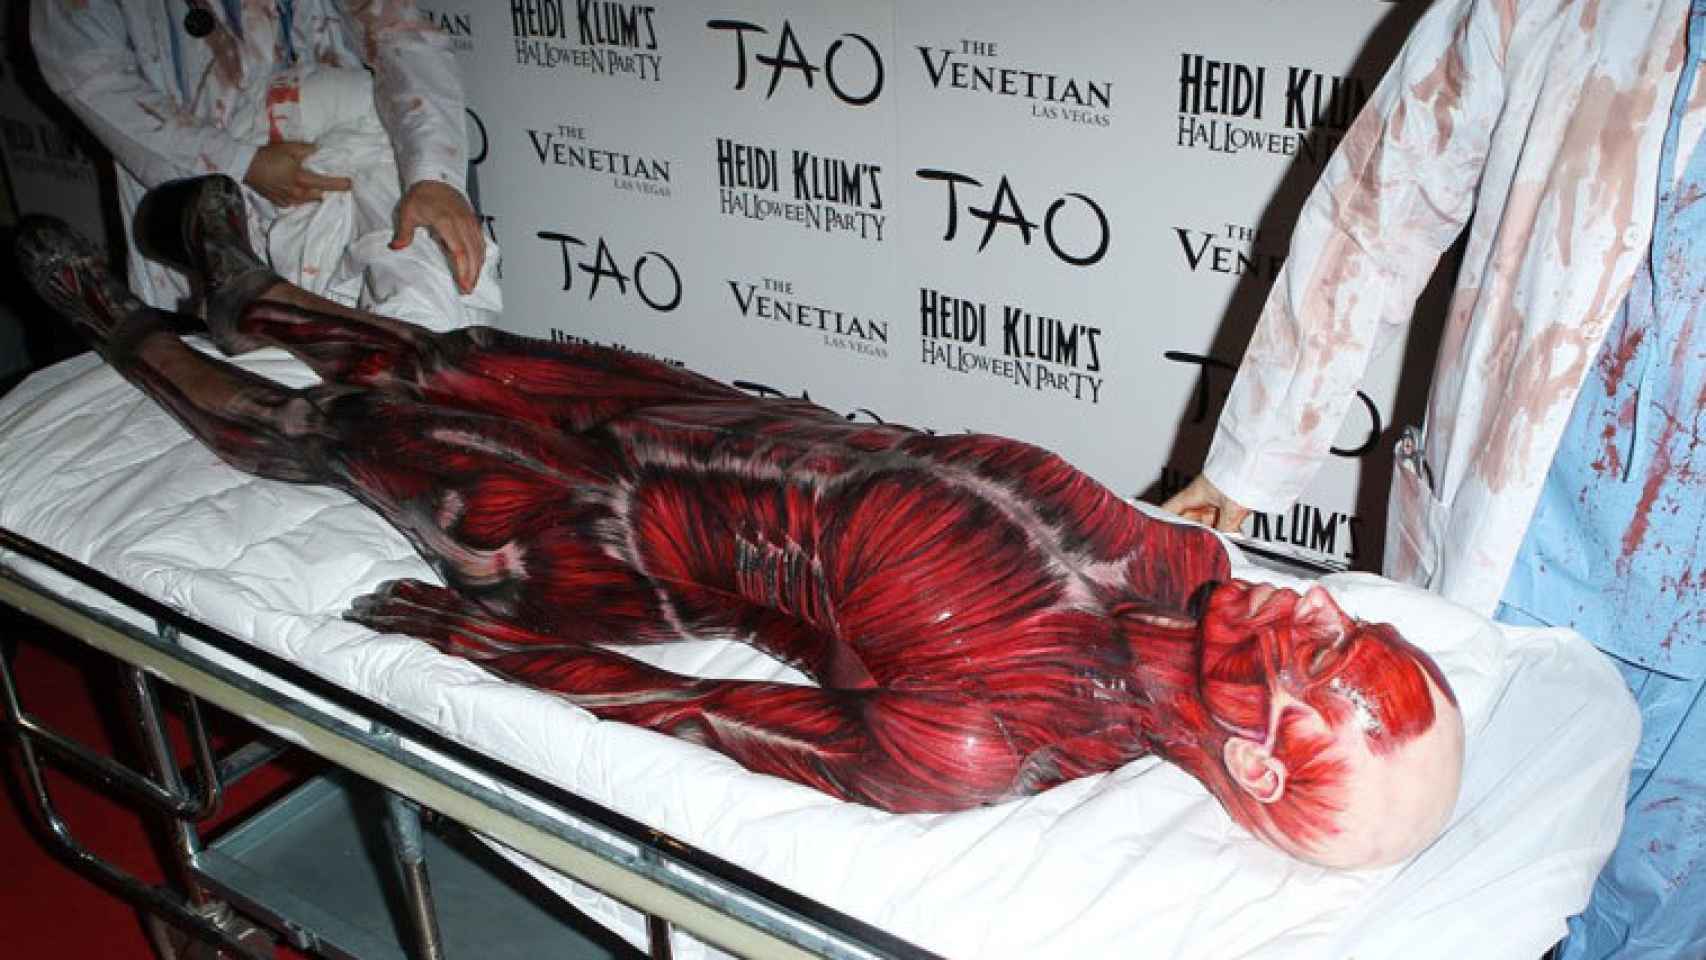 Heidi klum de cuerpo humano sin piel en una fiesta de Halloween en Nueva York